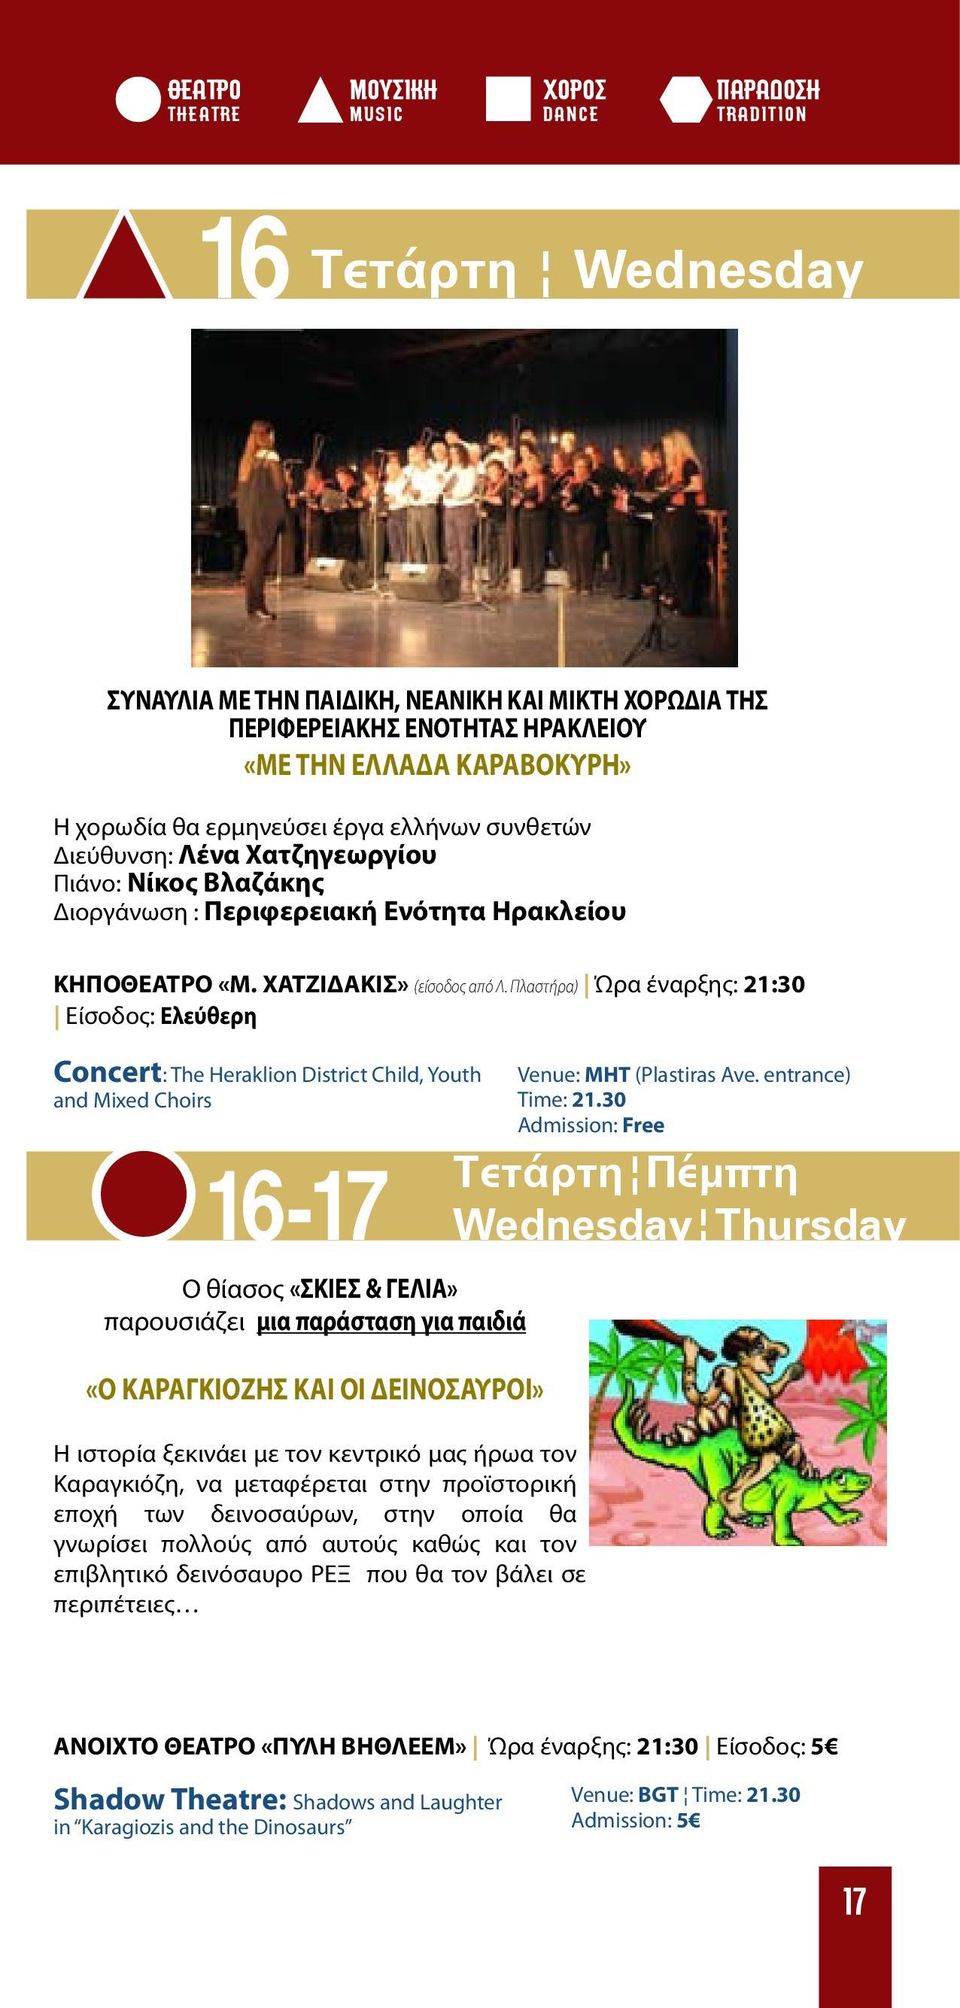 Πλαστήρα) Ώρα έναρξης: 21:30 Eίσοδος: Ελεύθερη Concert: The Heraklion District Child, Youth and Mixed Choirs Venue: MHT (Plastiras Ave. entrance) Time: 21.